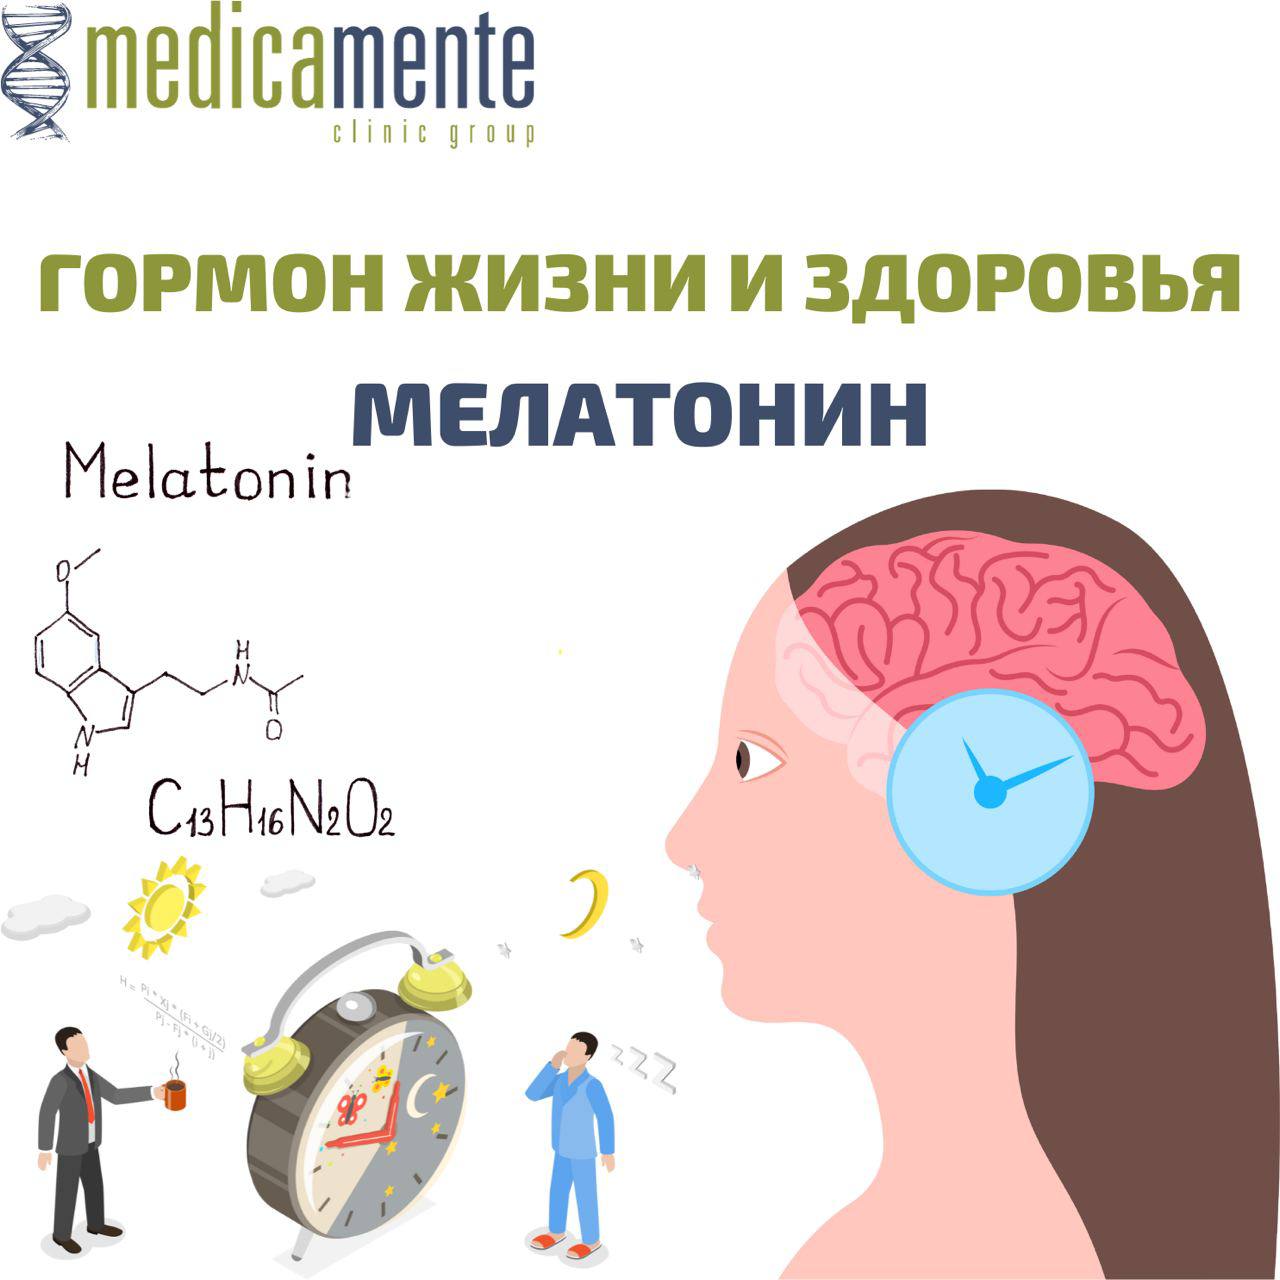 Мелатонин - гормон жизни и здоровья